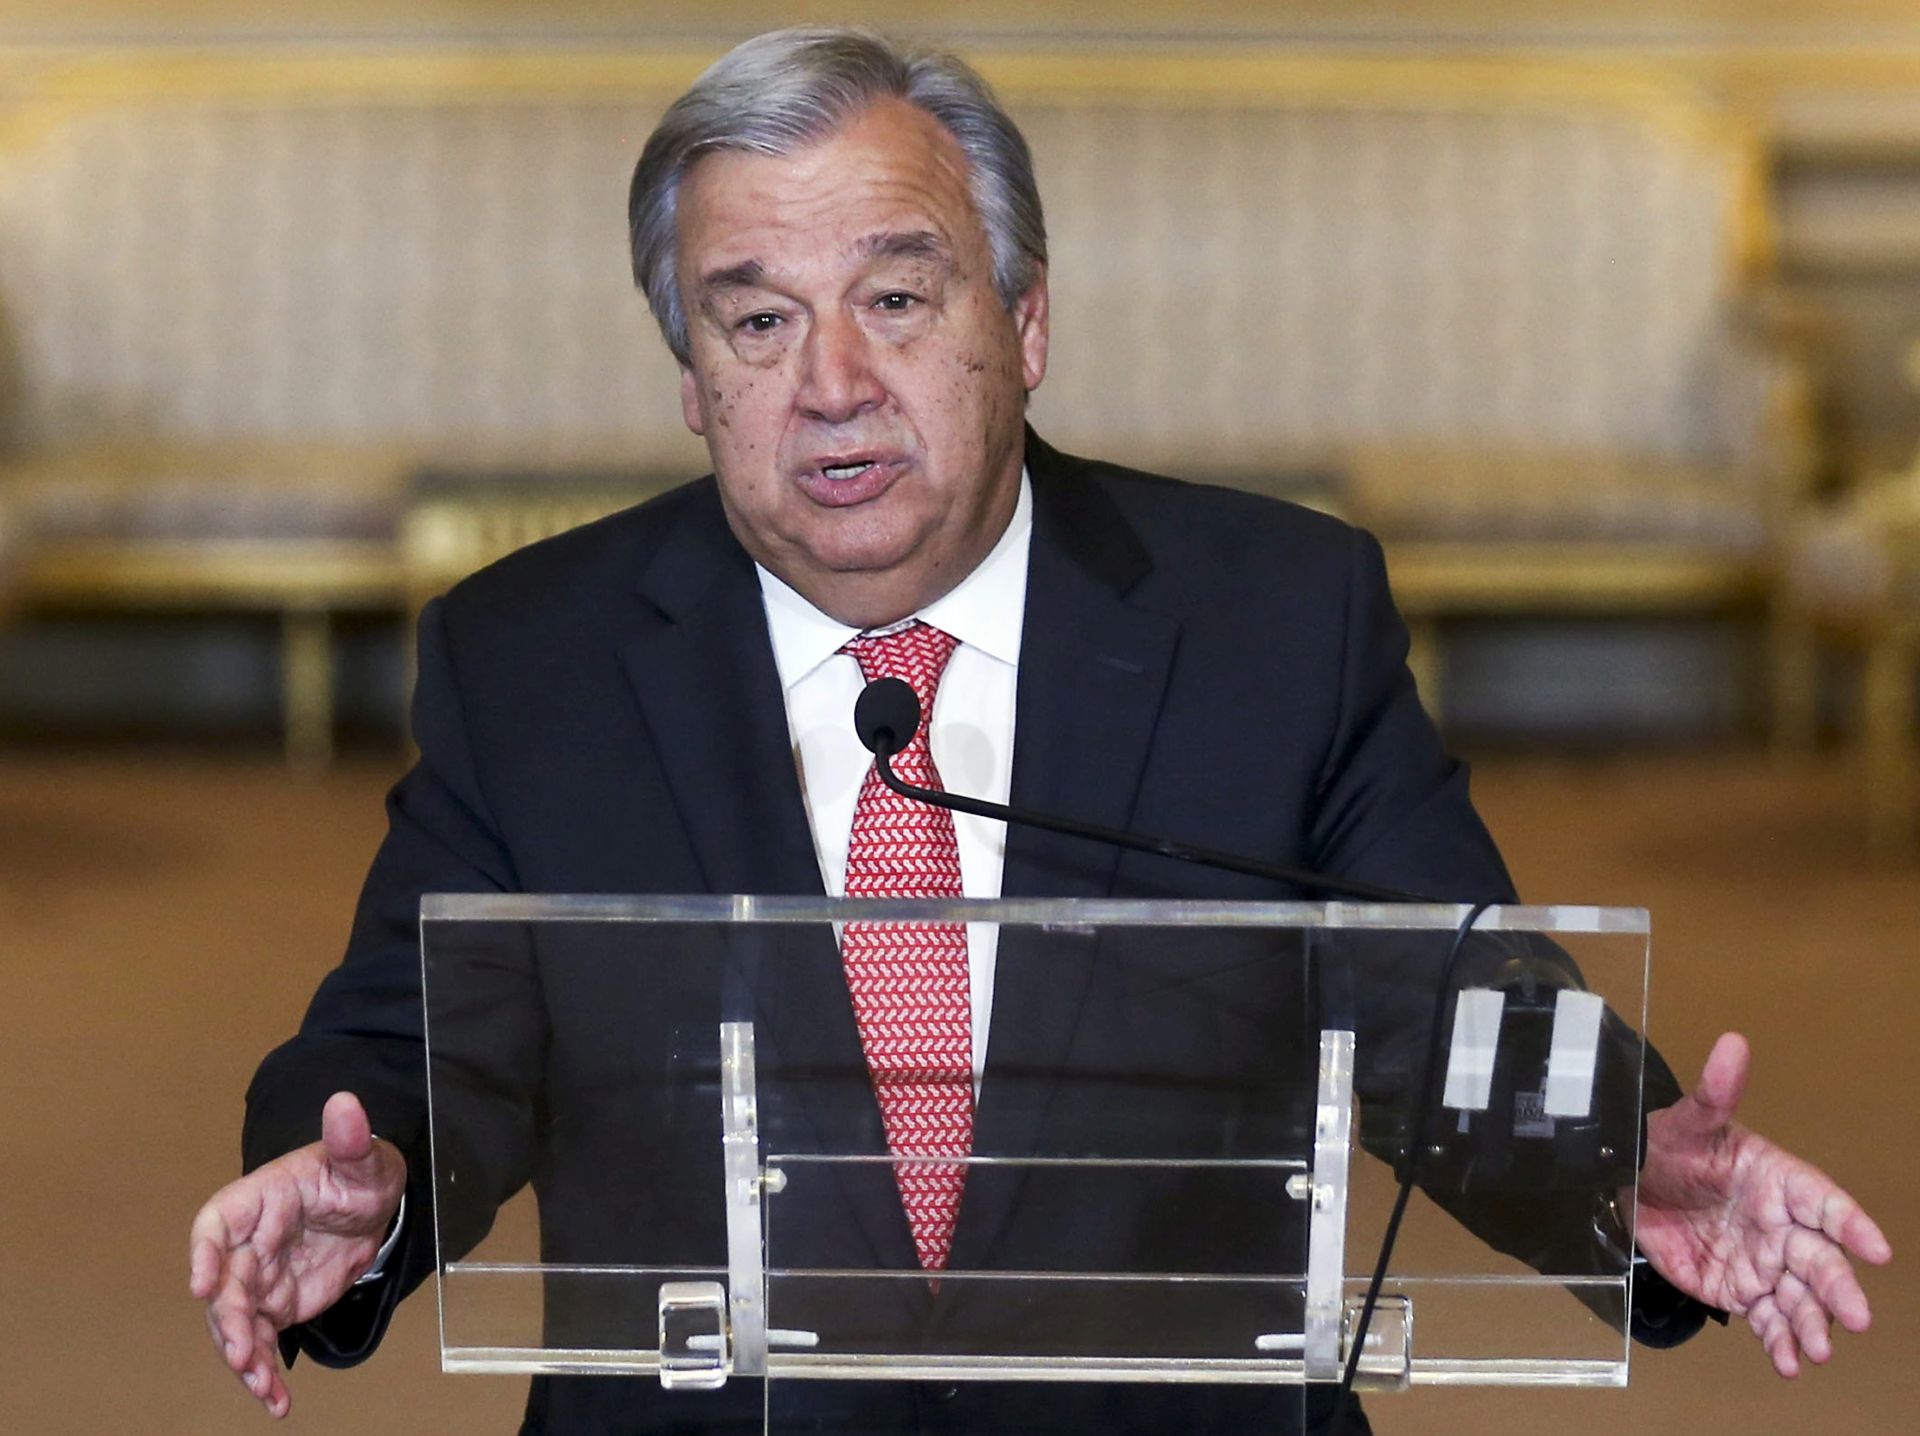 UN imenovao Guterresa novim glavnim tajnikom